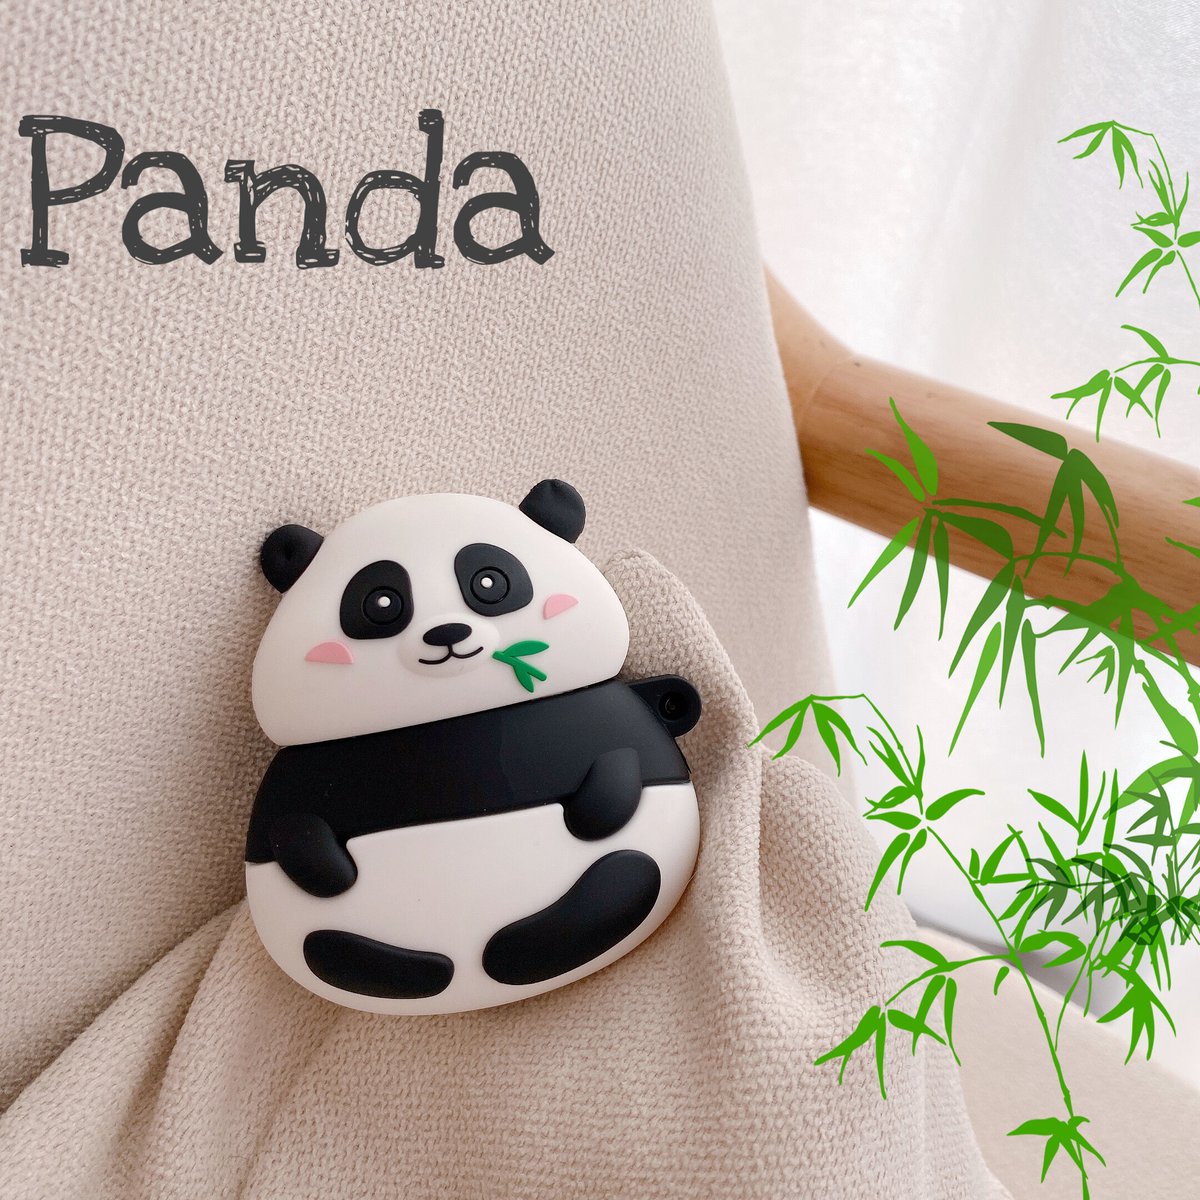 パンダ Airpodsケース Panda エアーポッズプロカバー 可愛い動物